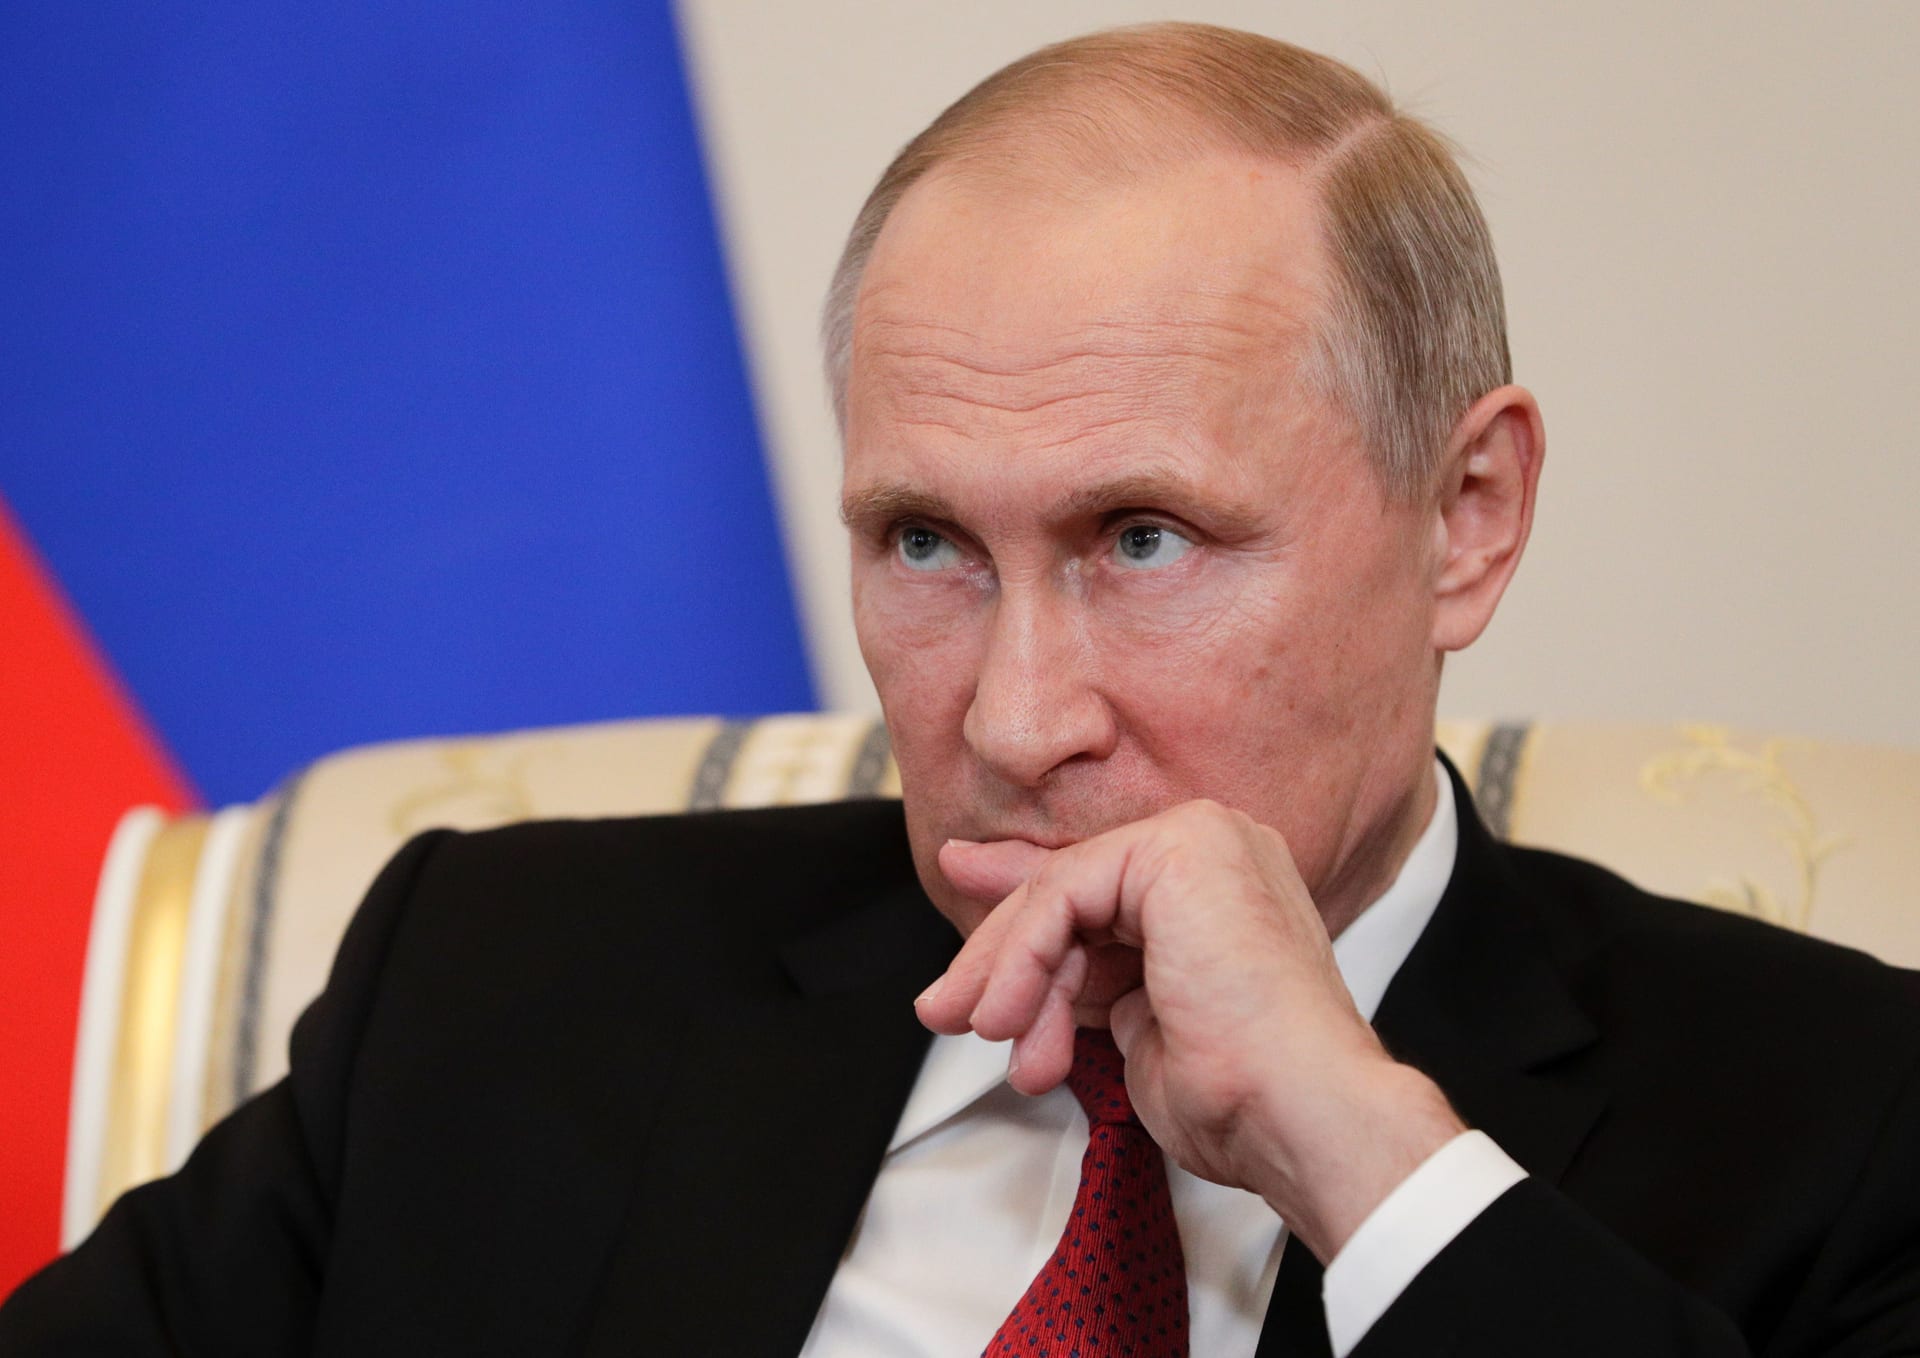 بوتين: الدرع الصاروخي الأمريكي تحد لروسيا ويشجع سباق التسلح.. و"الروسوفوبيا" ازدادت عن حدها في بعض الدول